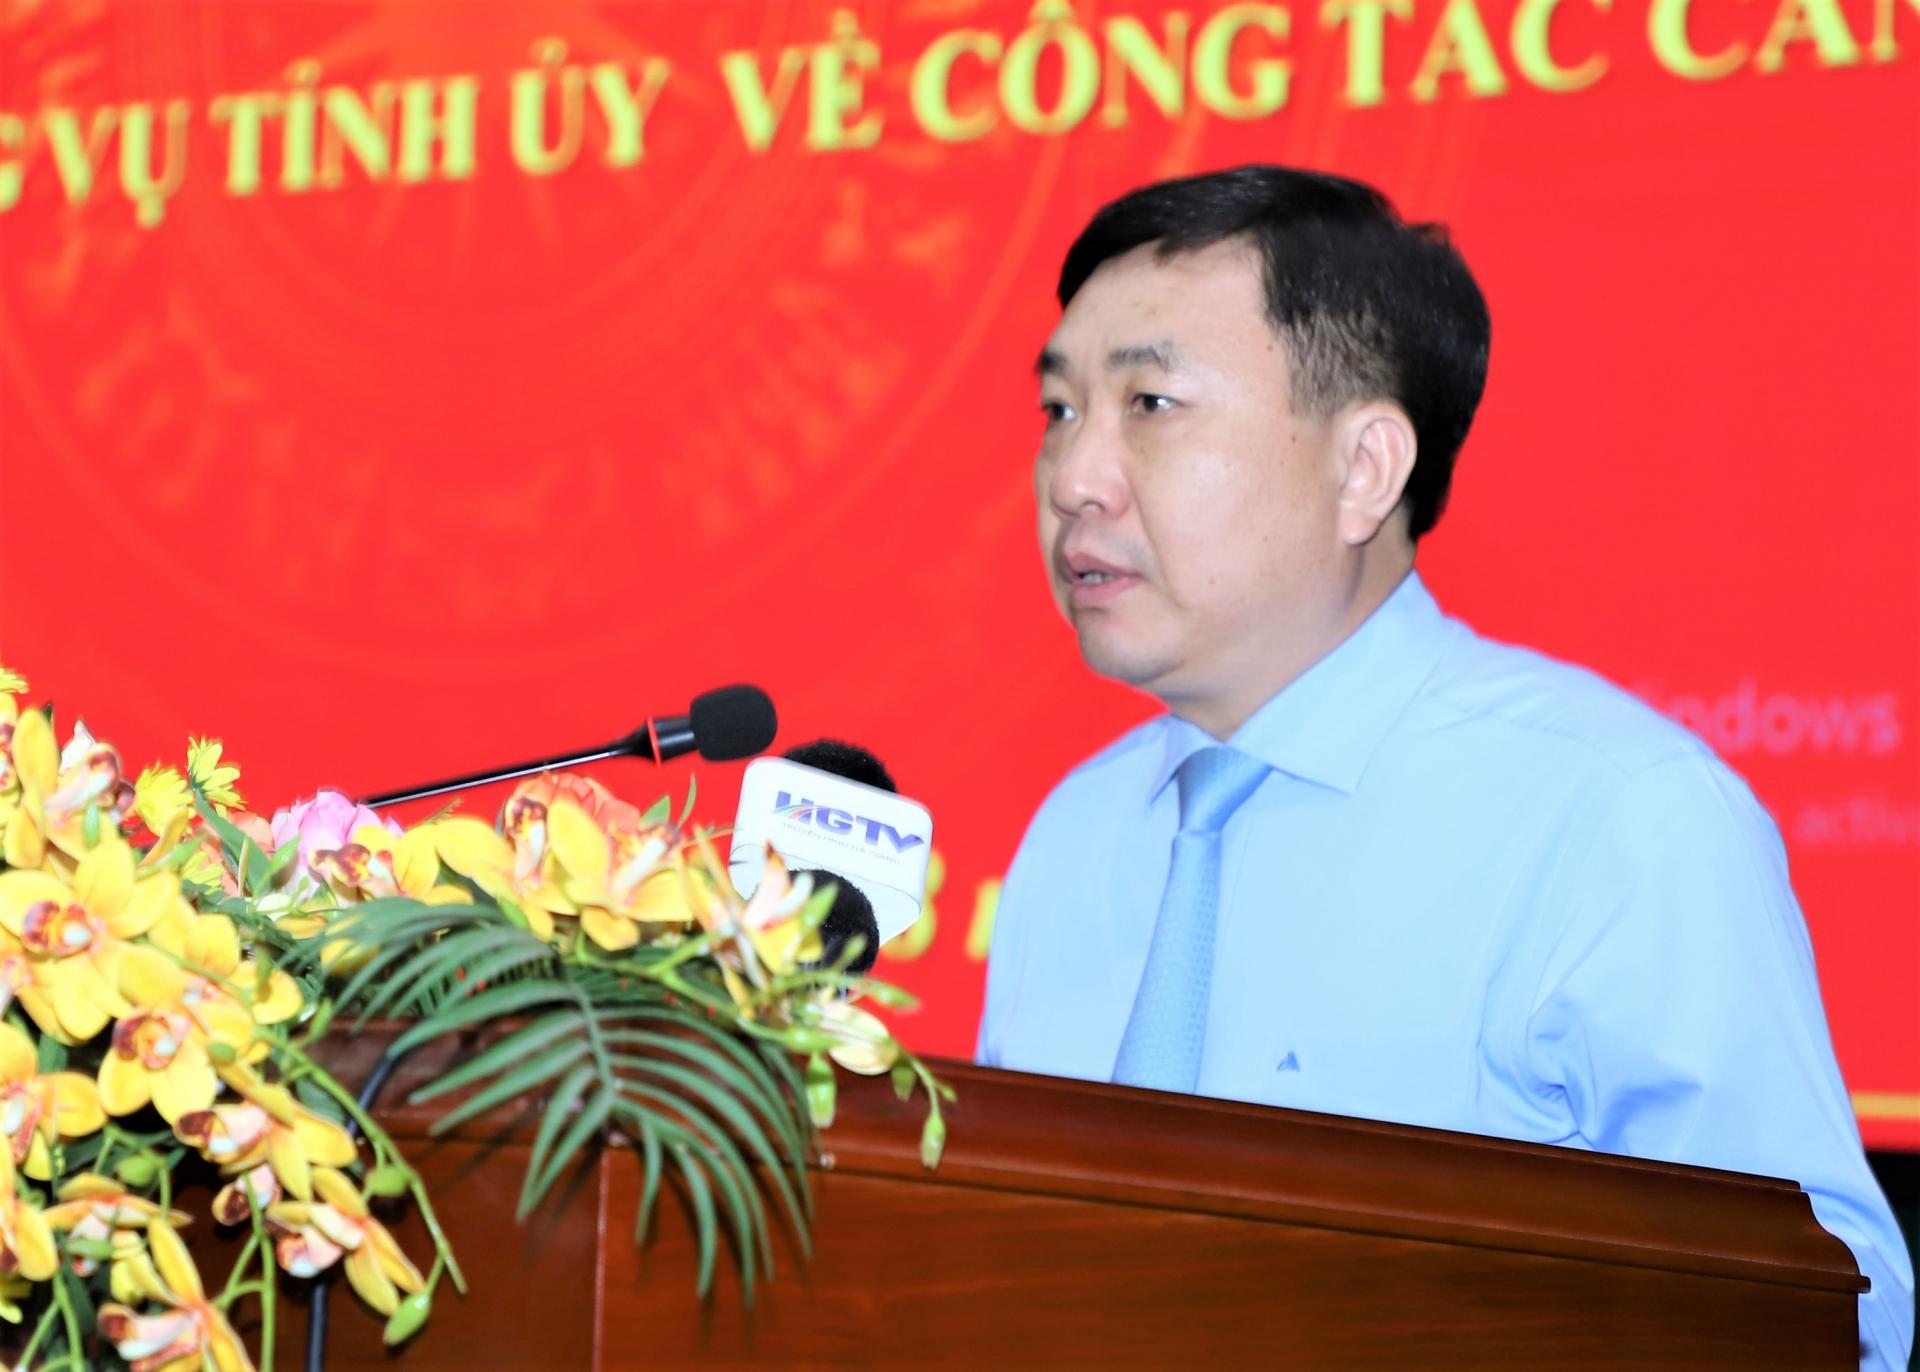 Quyền Bí thư Tỉnh ủy Nguyễn Mạnh Dũng phát biểu giao nhiệm vụ cho đồng chí Triệu Tài Phong và đồng chí Nguyễn Trung Ngọc